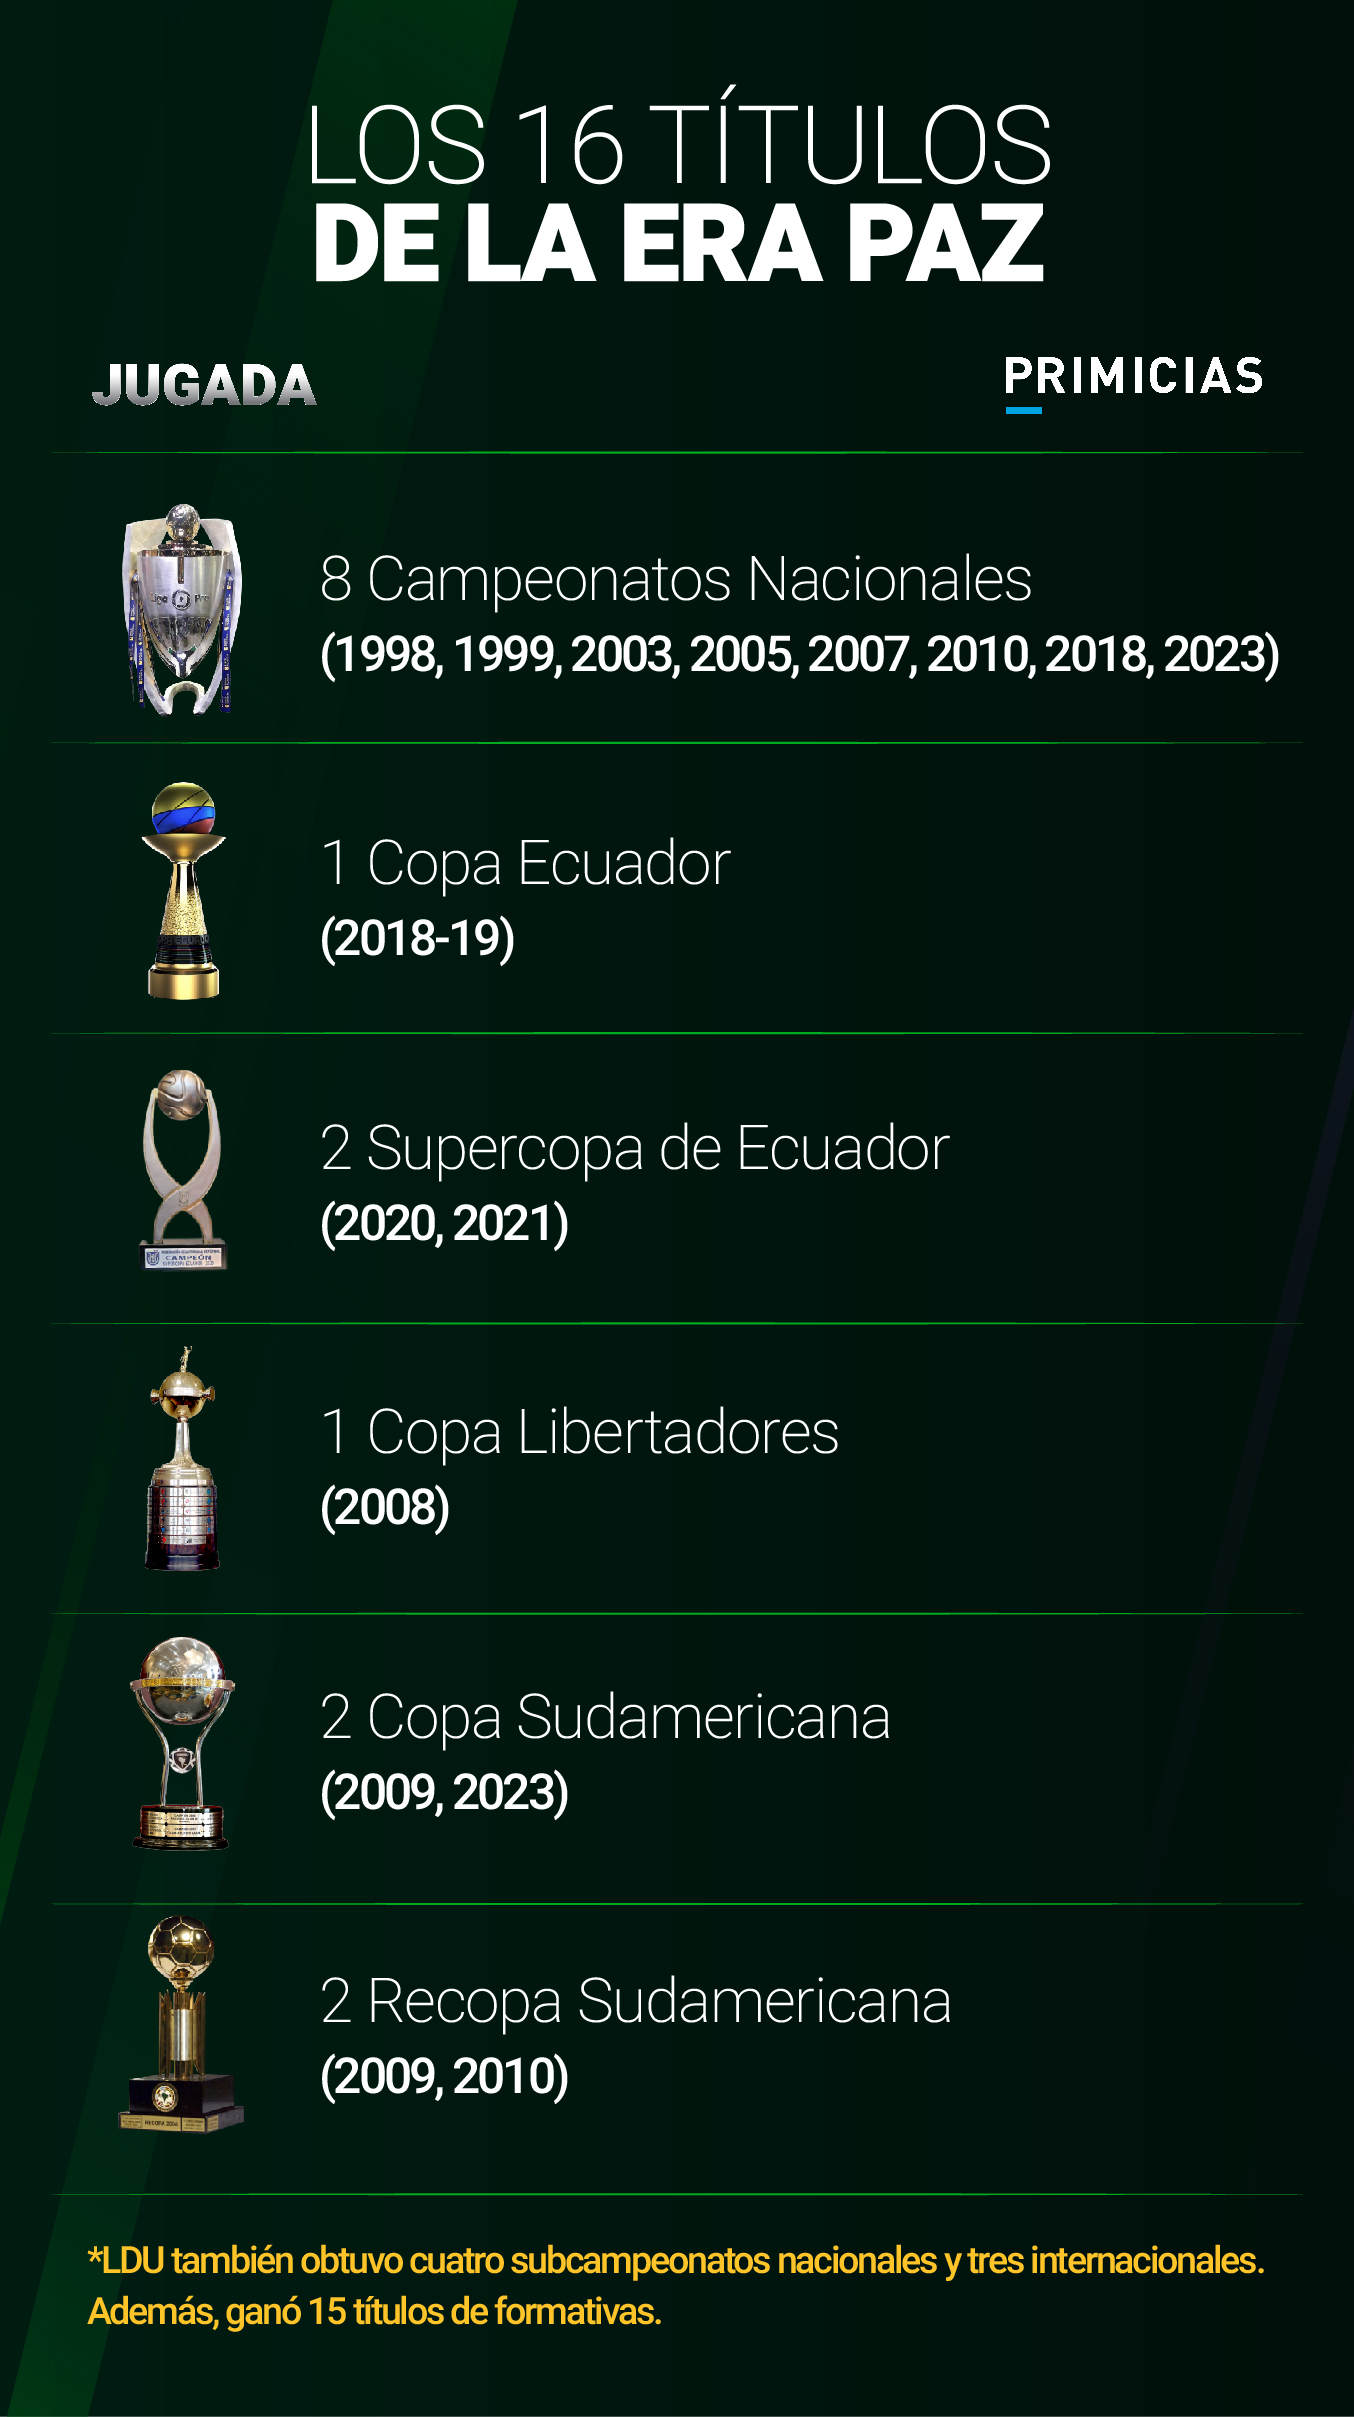 Títulos de la 'era Paz' en Liga de Quito. 